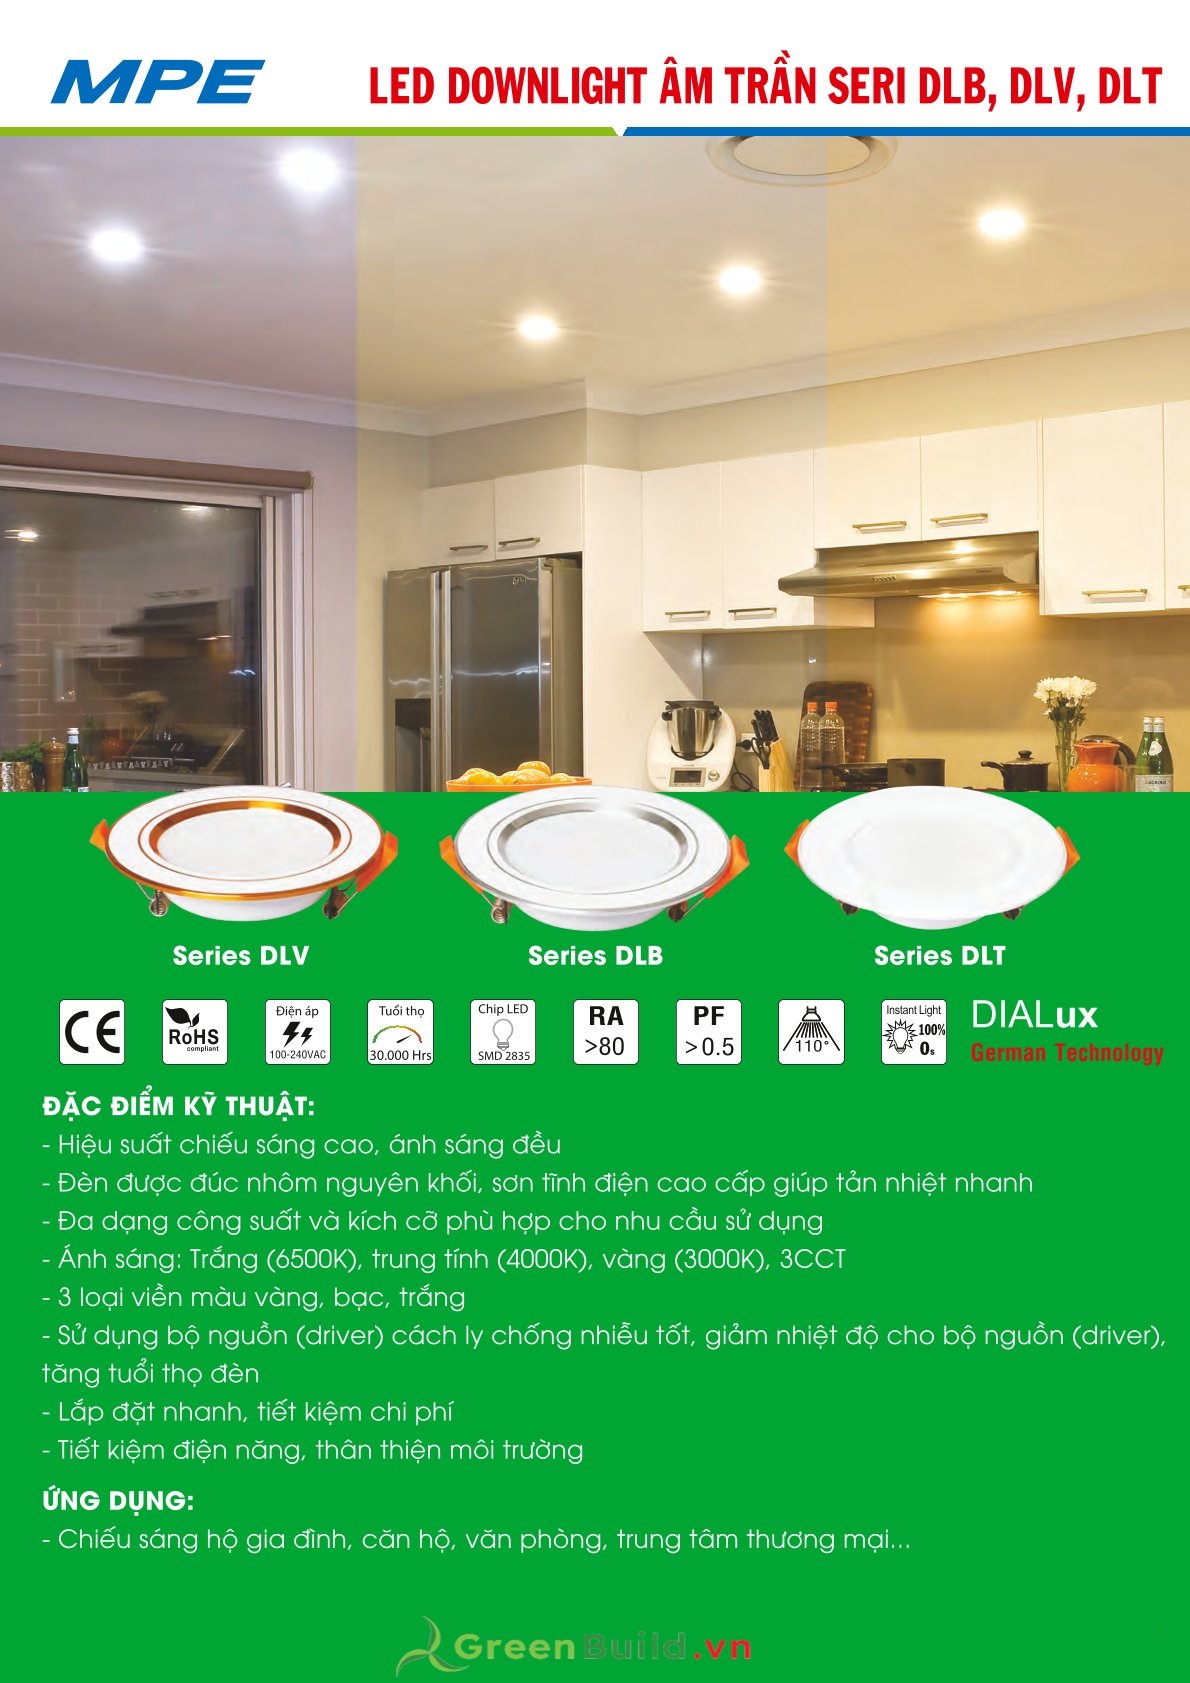 Greenbuild - Đèn LED downlight 3 màu MPE DLV 9W [DLV-9/3C], đèn LED đổi màu âm trần chất lượng cao, đèn LED MPE được bảo hành lâu dài